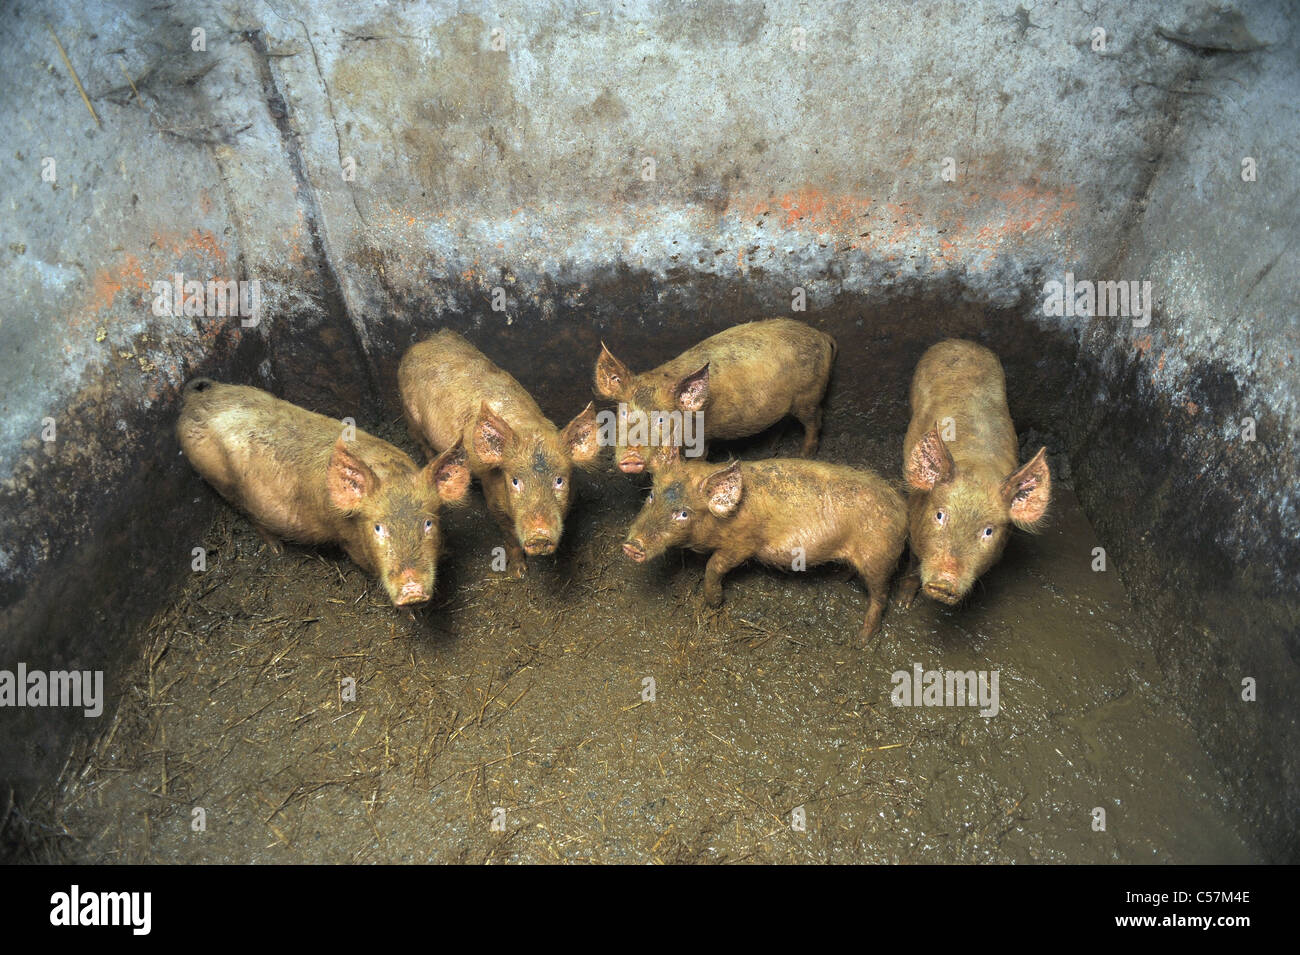 Petits cochons sales sales dans une porcherie Banque D'Images